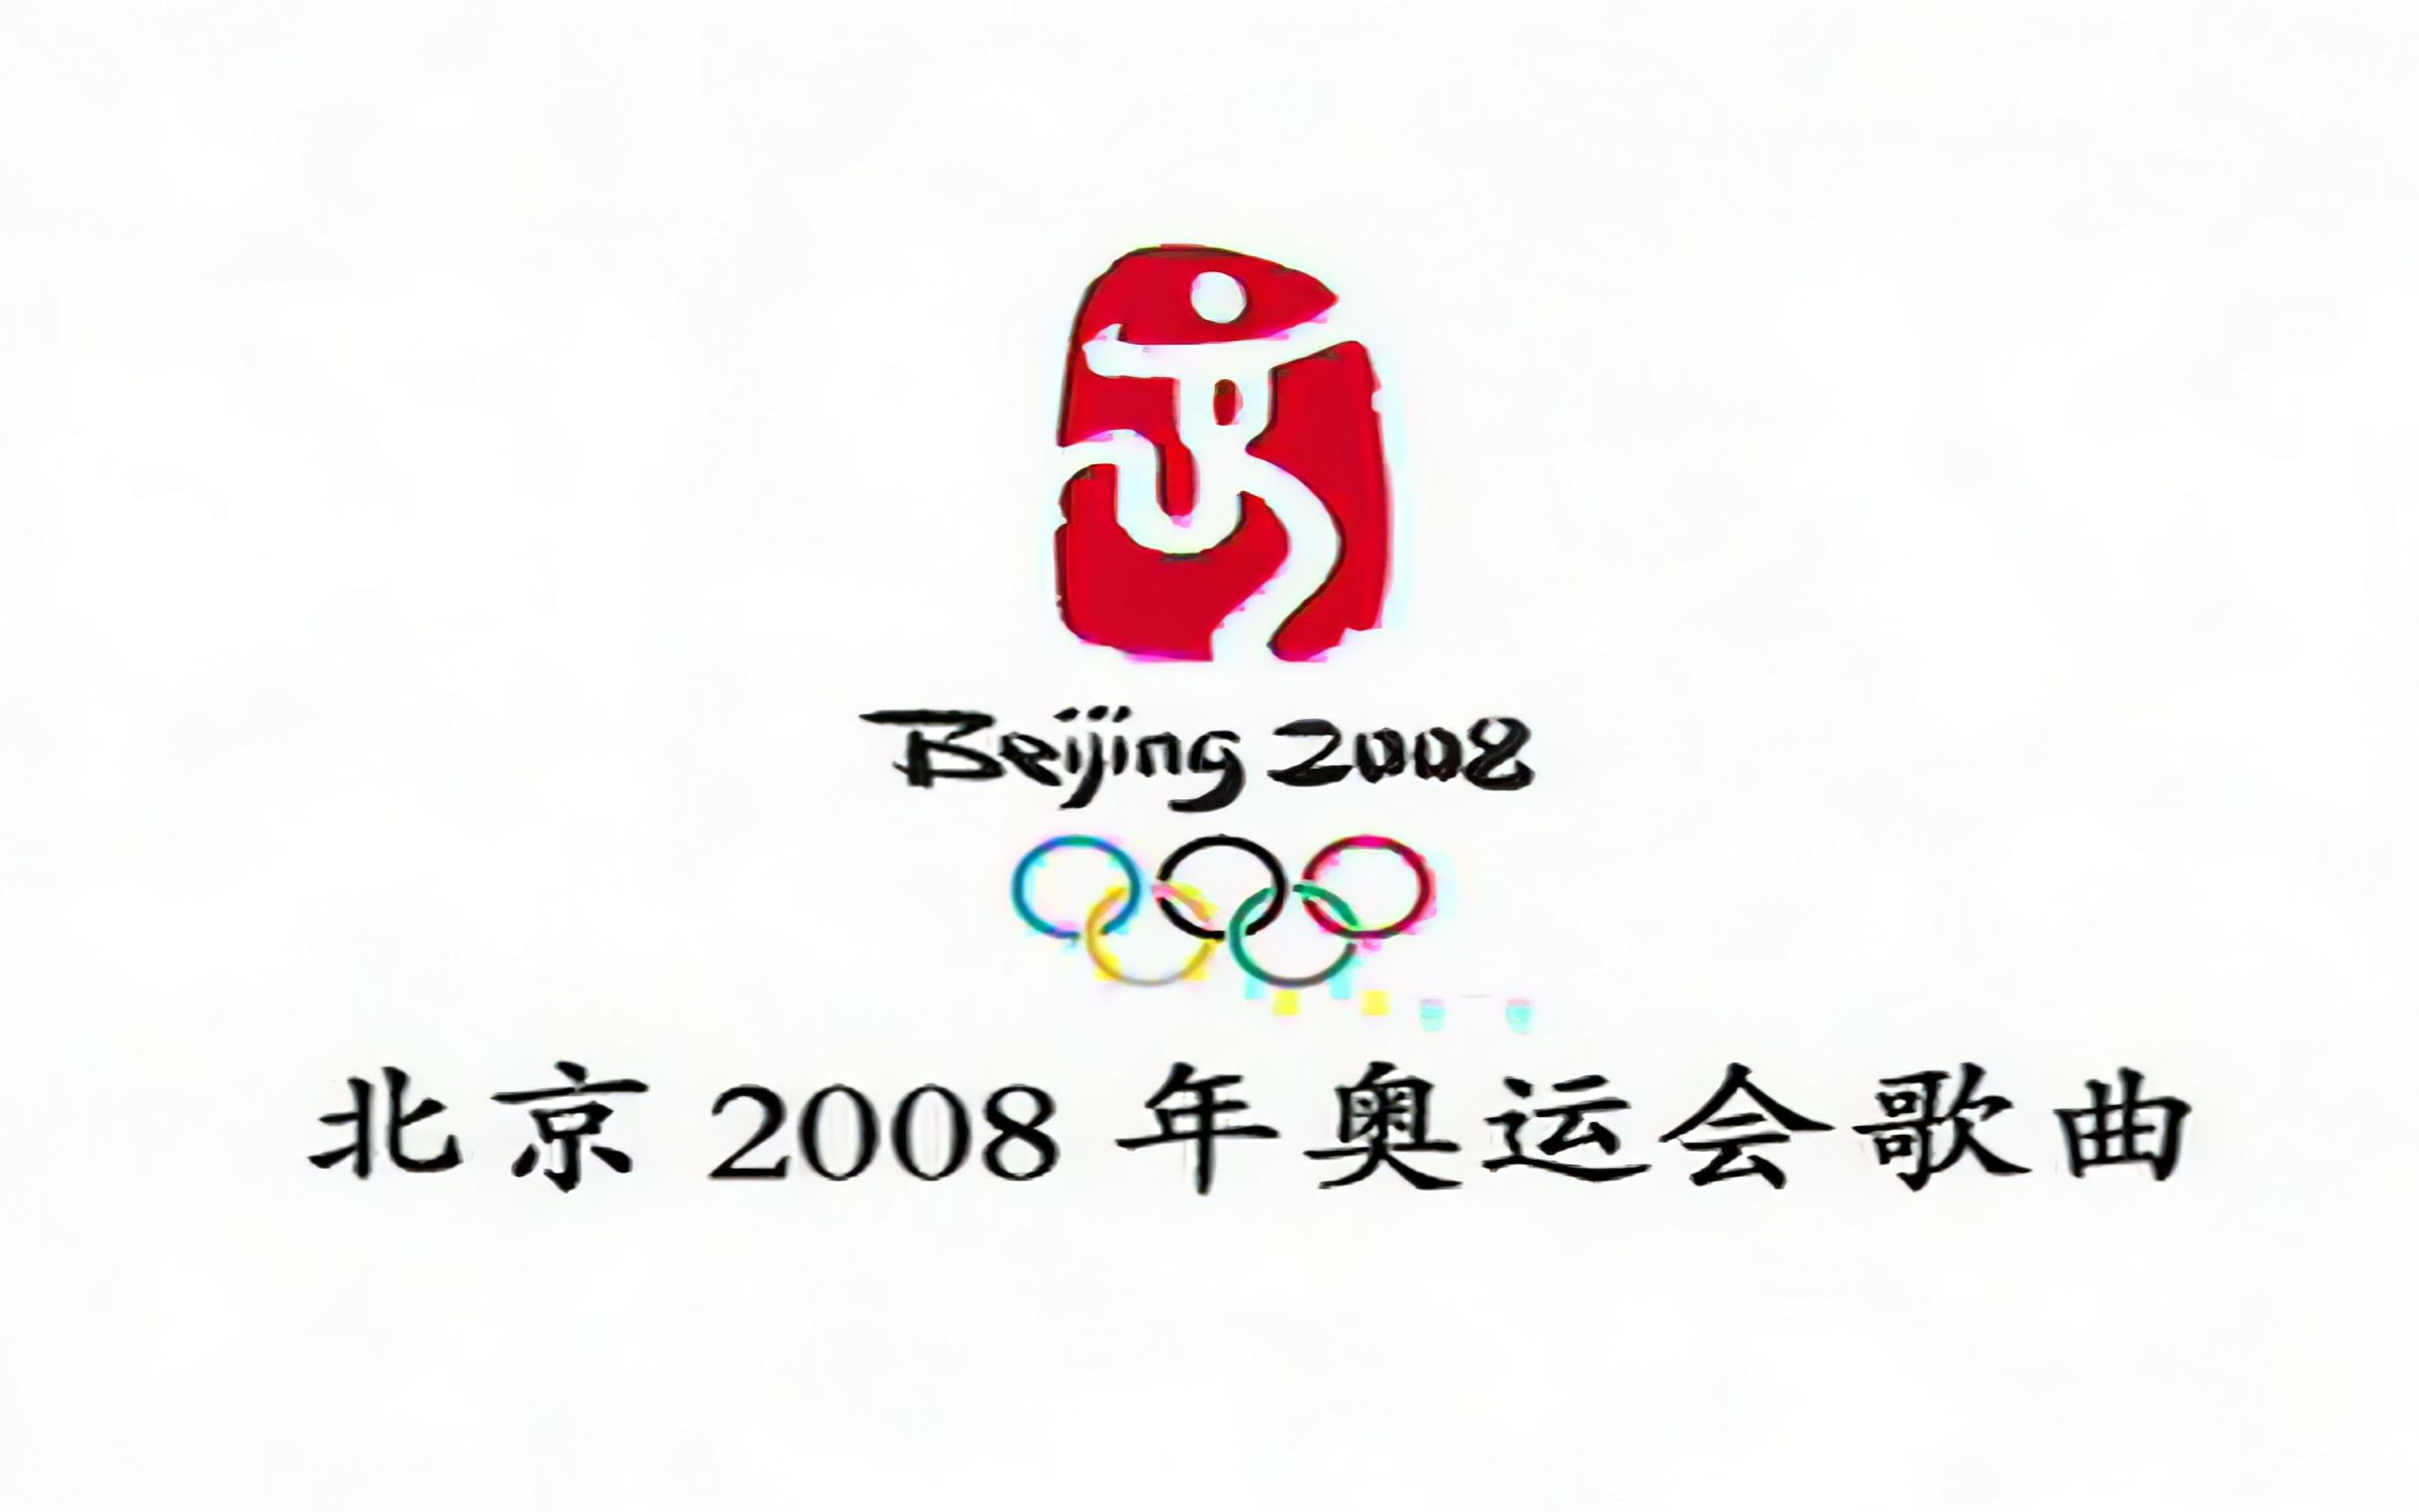 群星《北京欢迎你》北京奥运会主题歌!高清修复版!